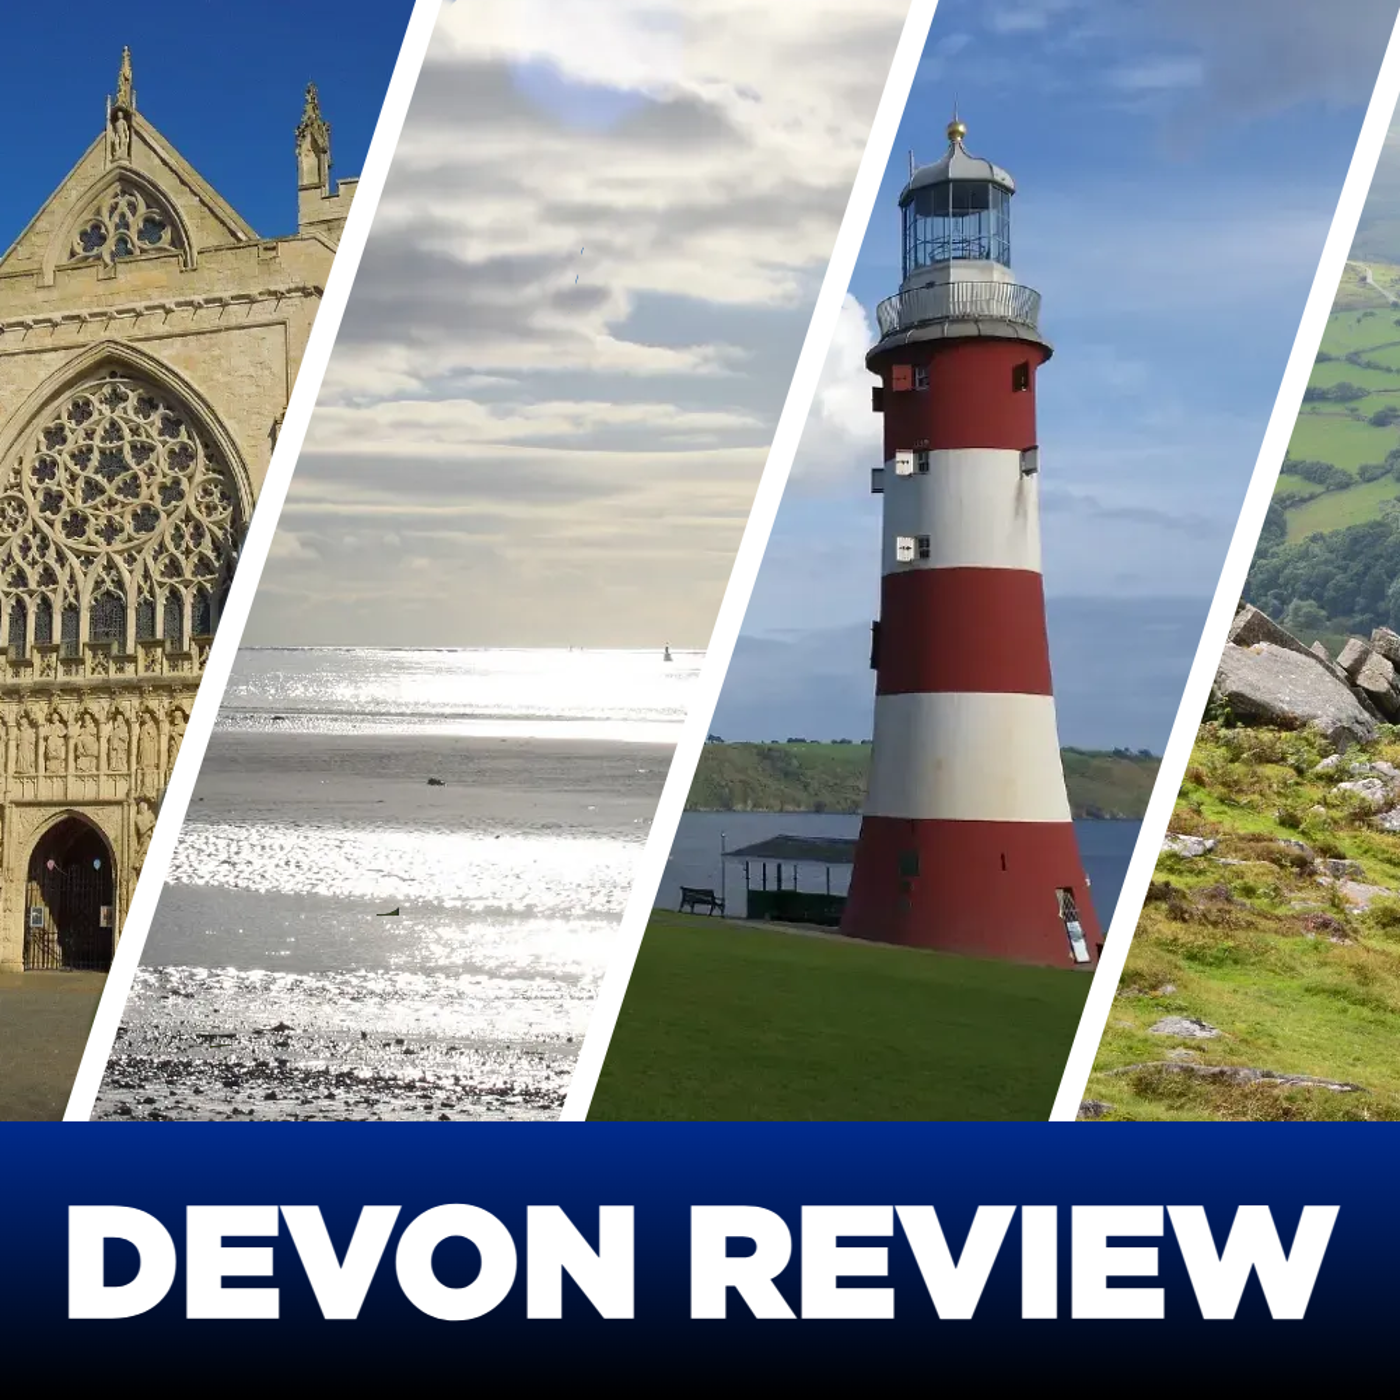 Devon Review